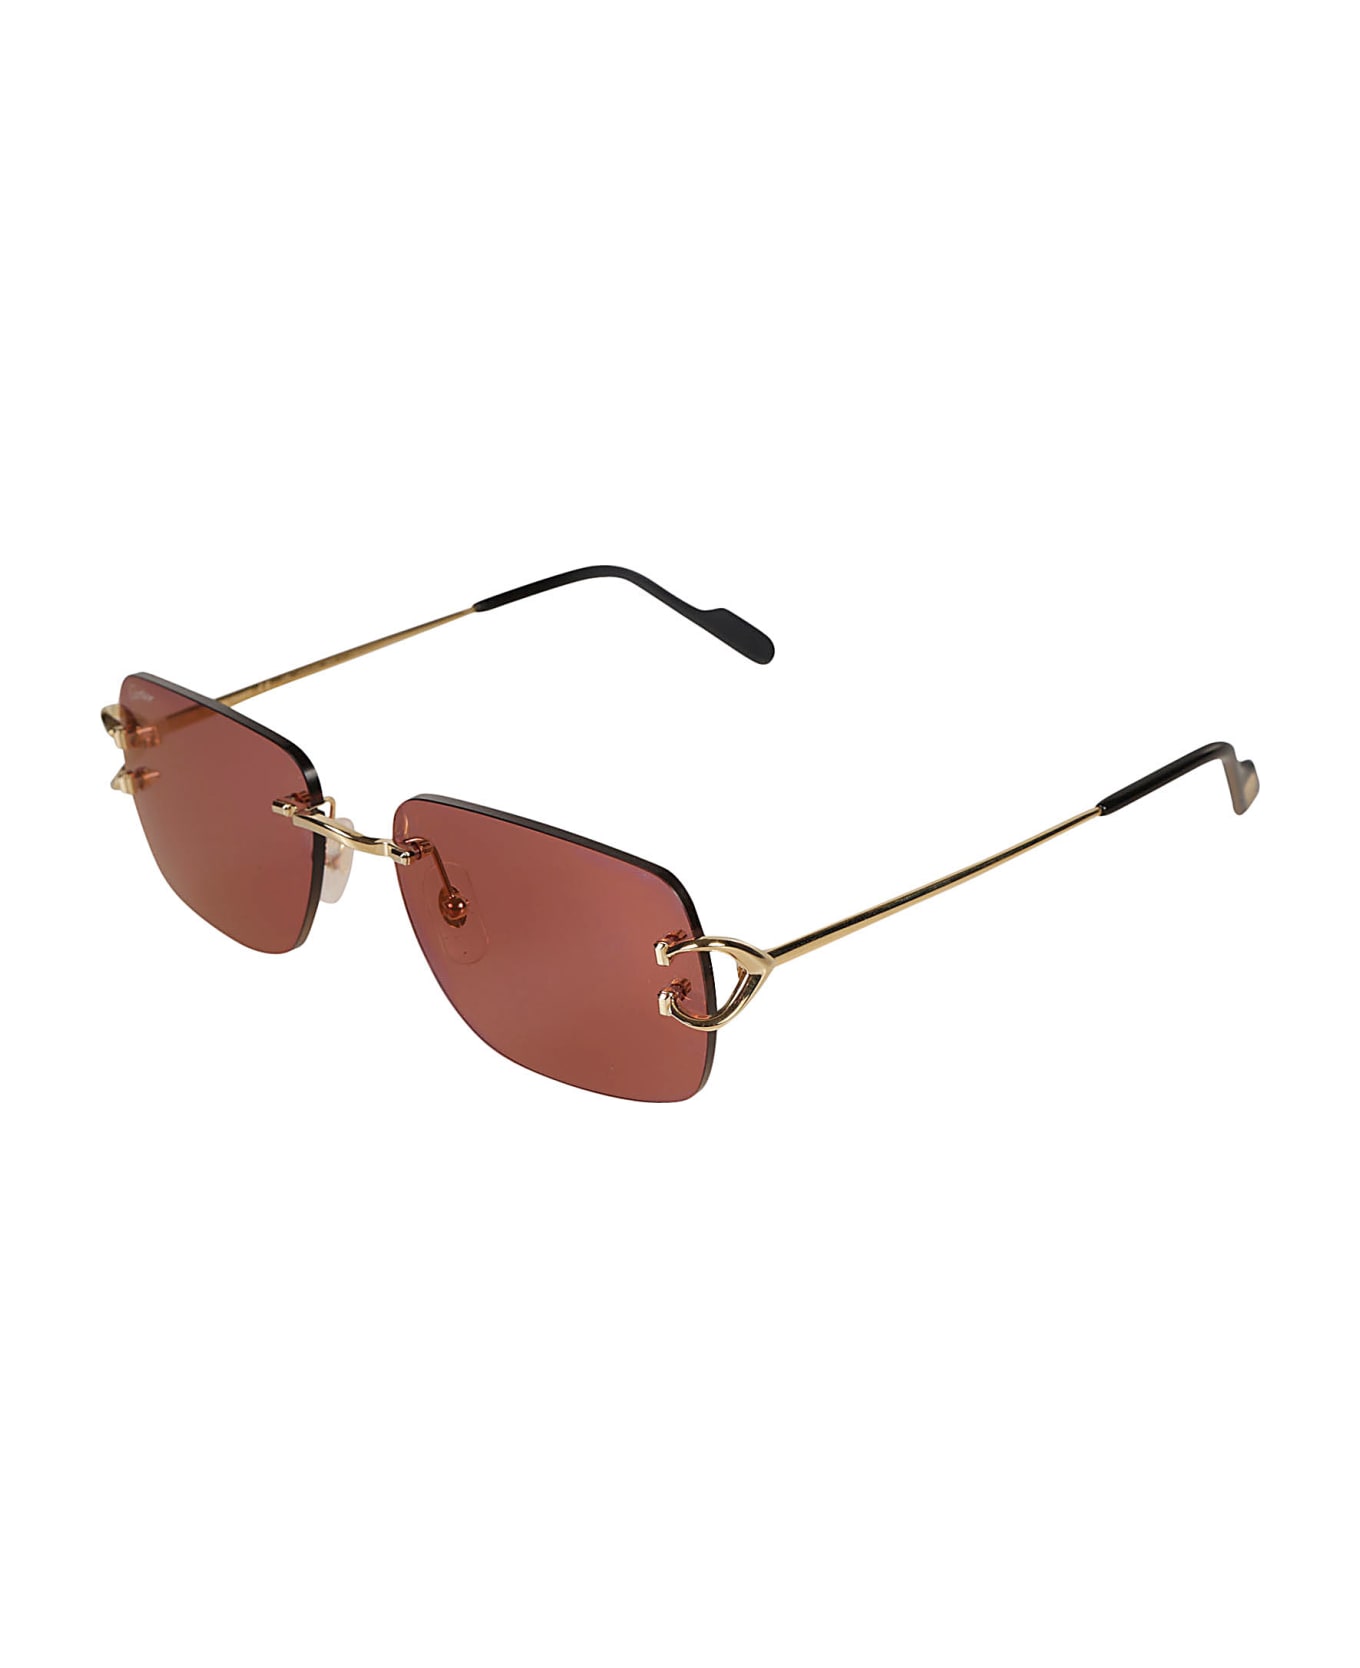 Cartier Eyewear Rectangular Sunglasses Sunglasses - Gold/Red